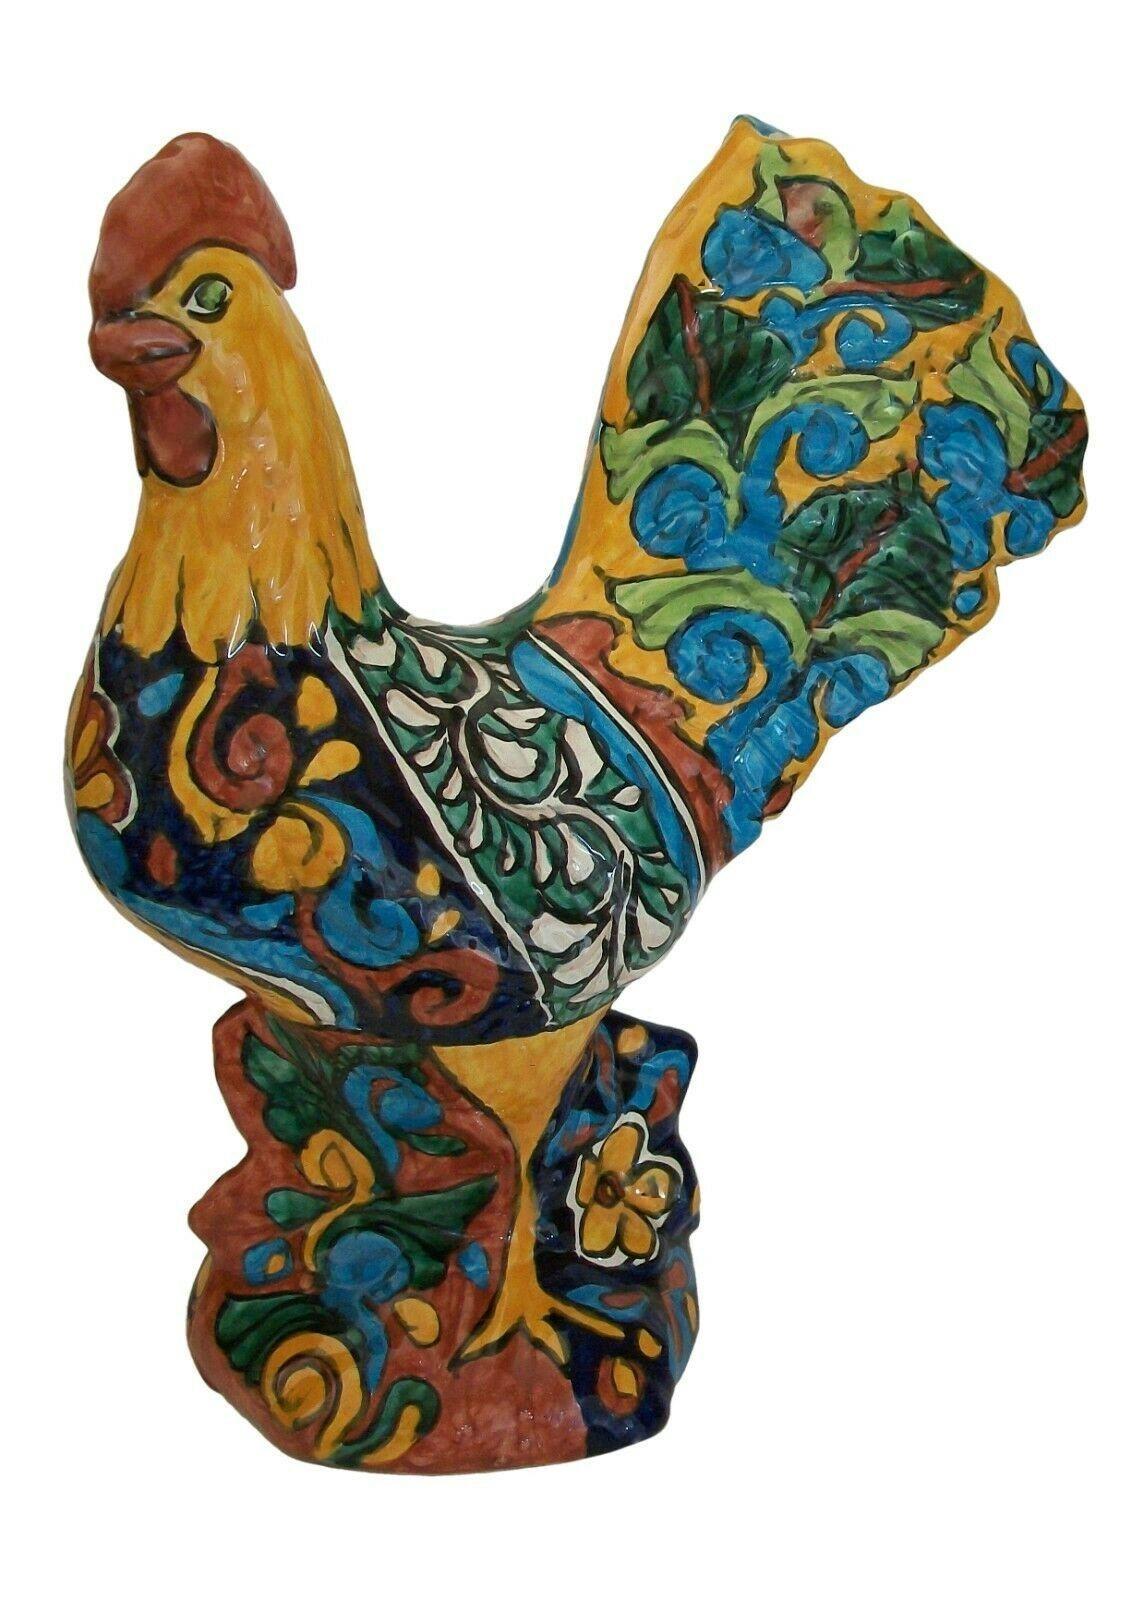 Grand coq vintage en céramique Talavera peint à la main - avec un motif typique multicolore - non signé - Mexique - vers les années 1980.

Excellent/neutre état vintage - pas de perte - pas de dommage - pas de restauration - signes mineurs d'âge